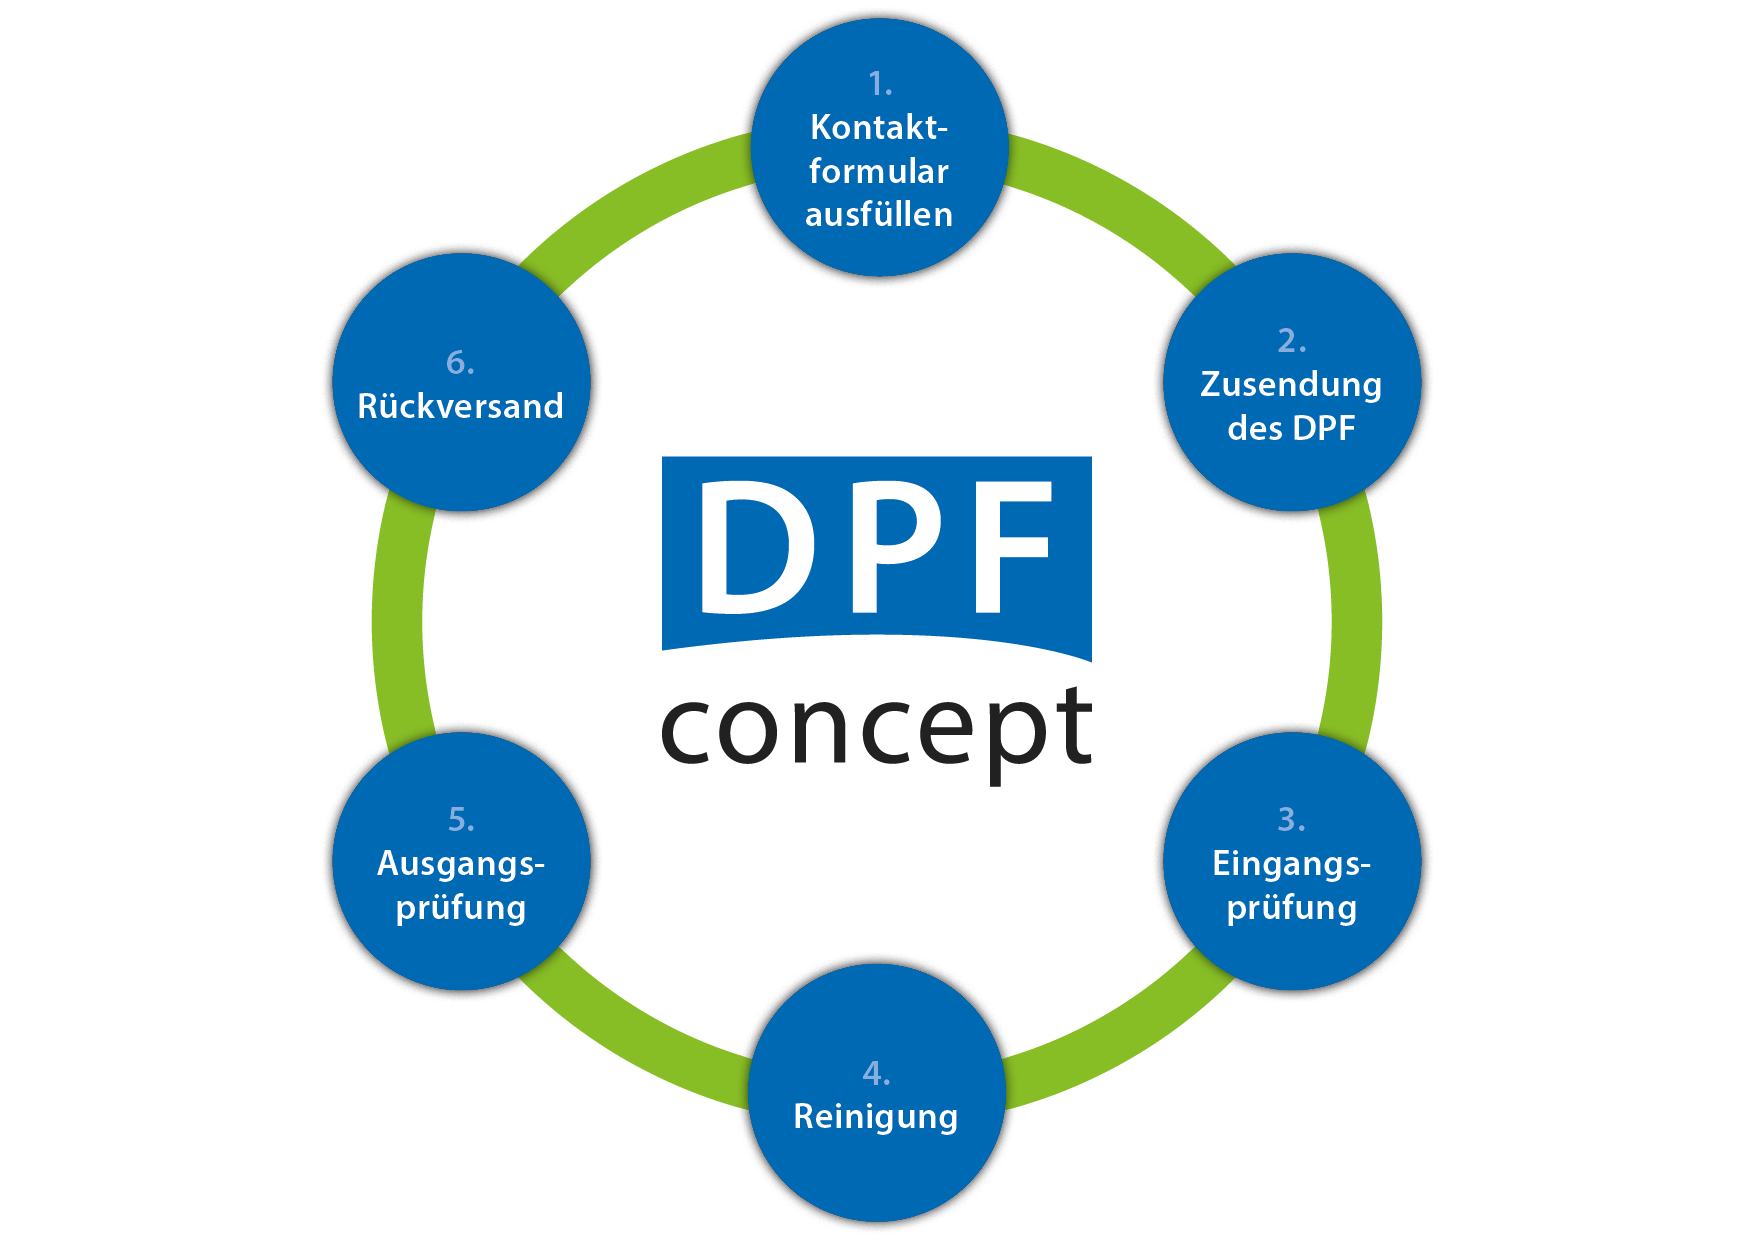 DPF Ablauf der Reinigung - DPF concept